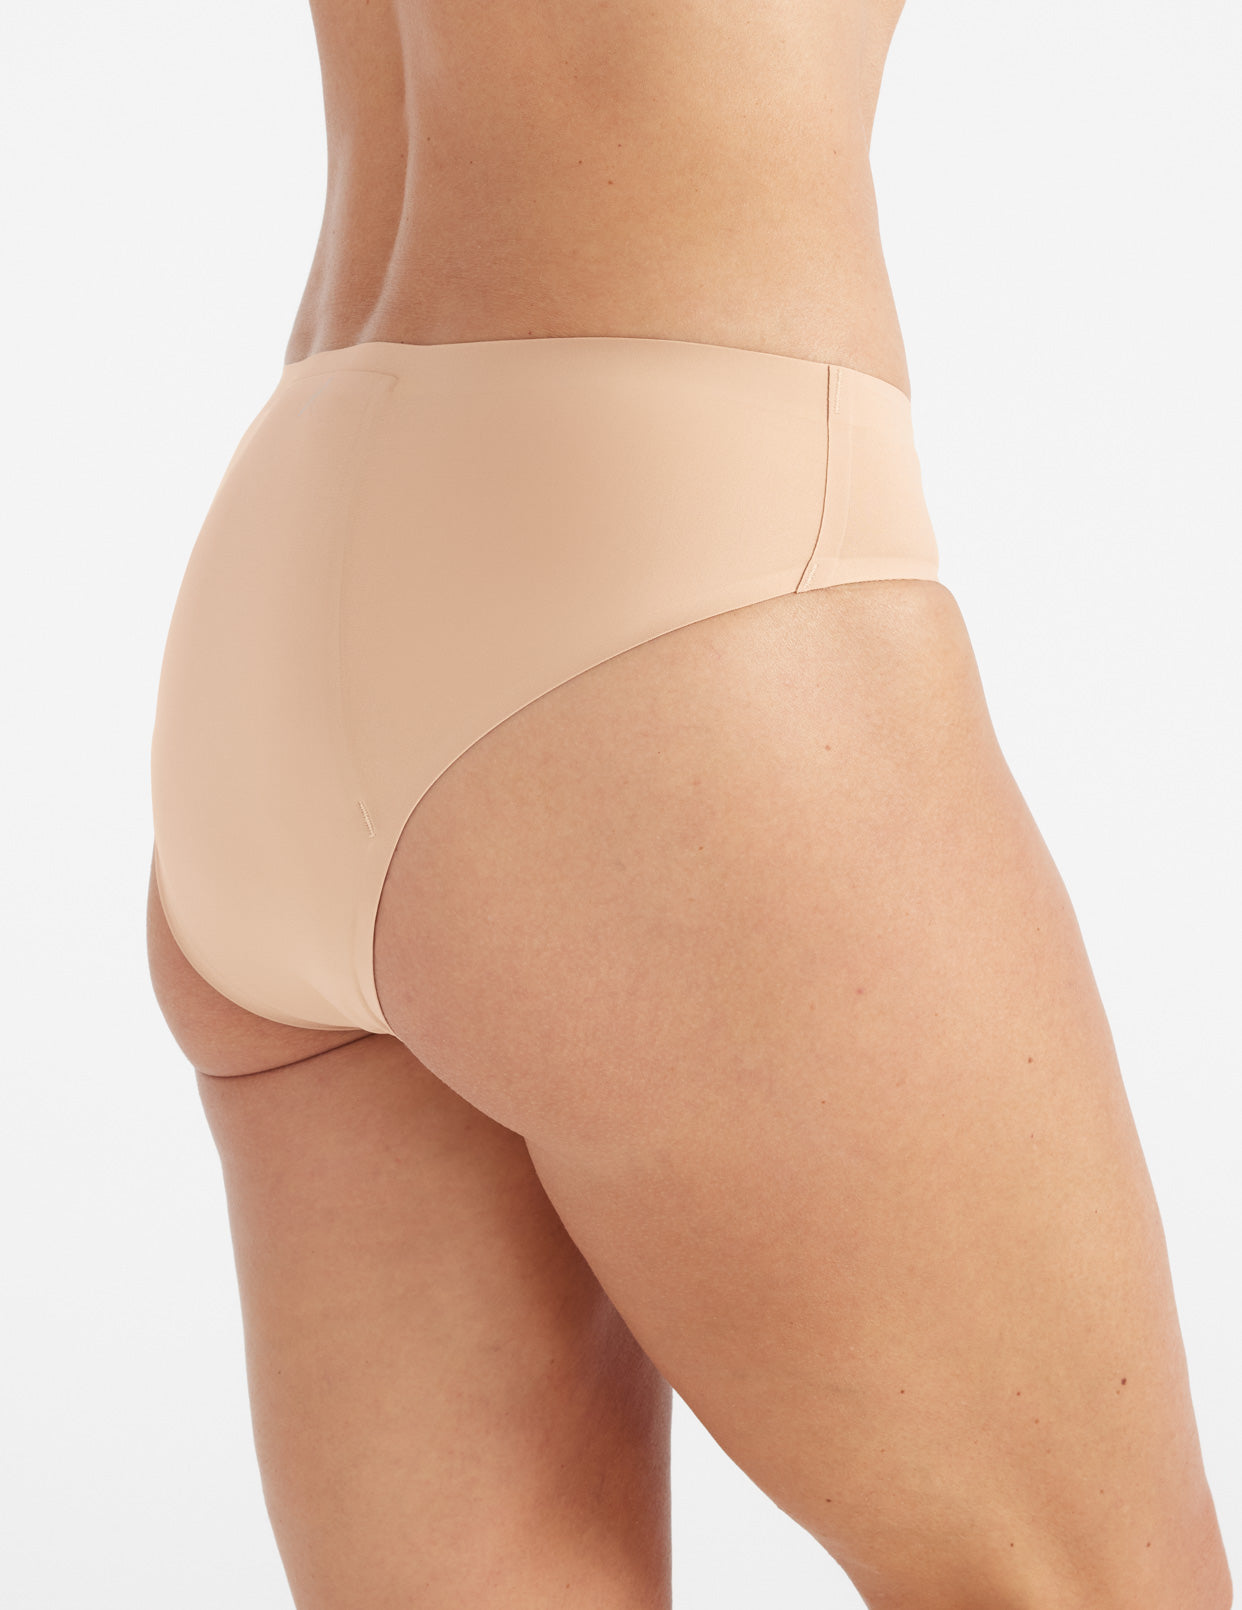 HUPOM Knix Underwear Underwear For Women Postpartum Activewear None Banded  Waist Pink L 